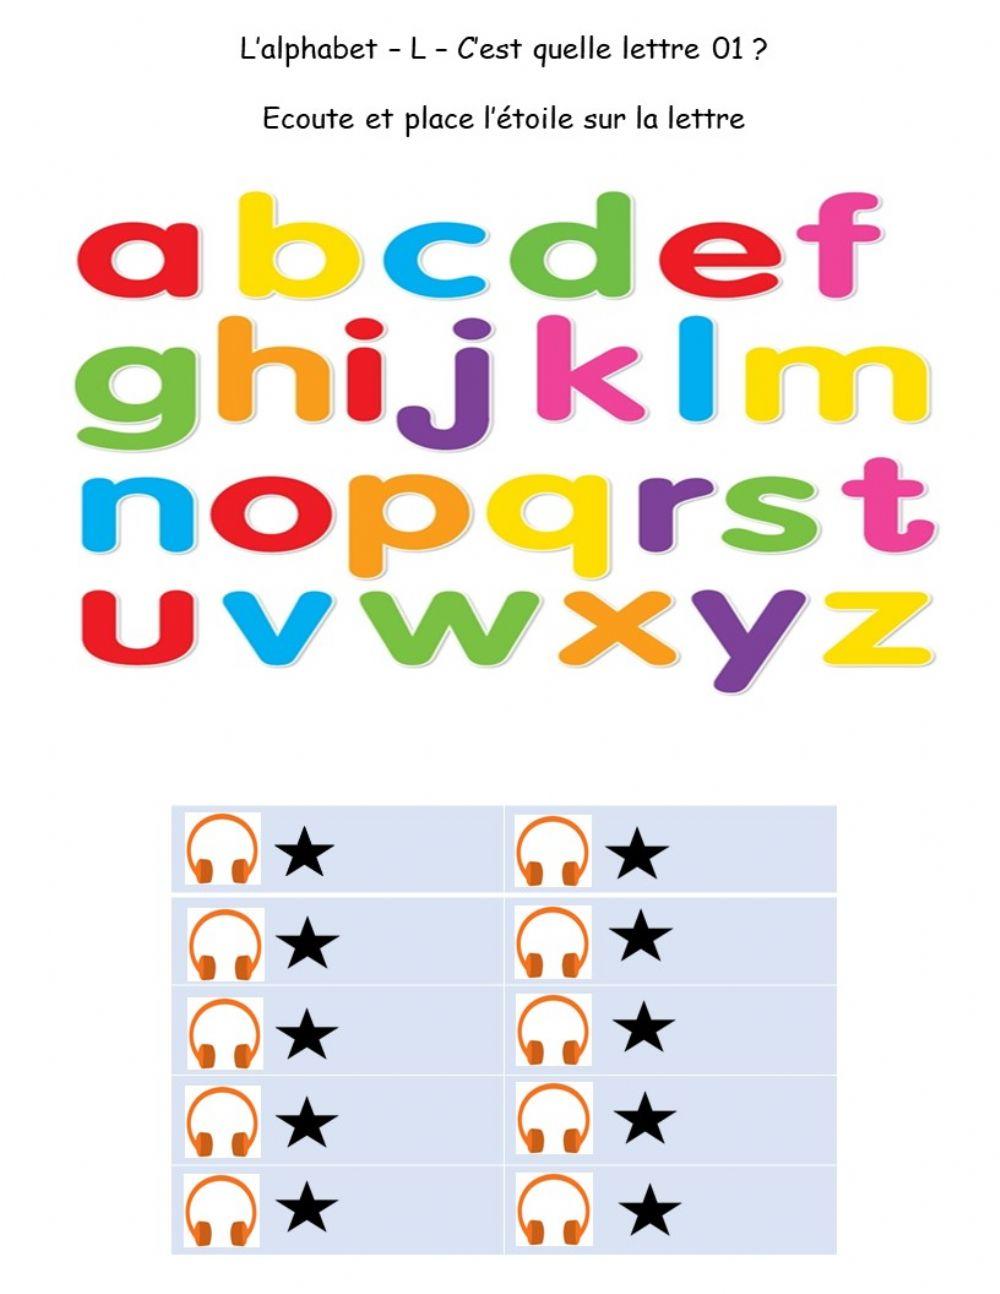 Alphabet - L - Quelle lettre 01